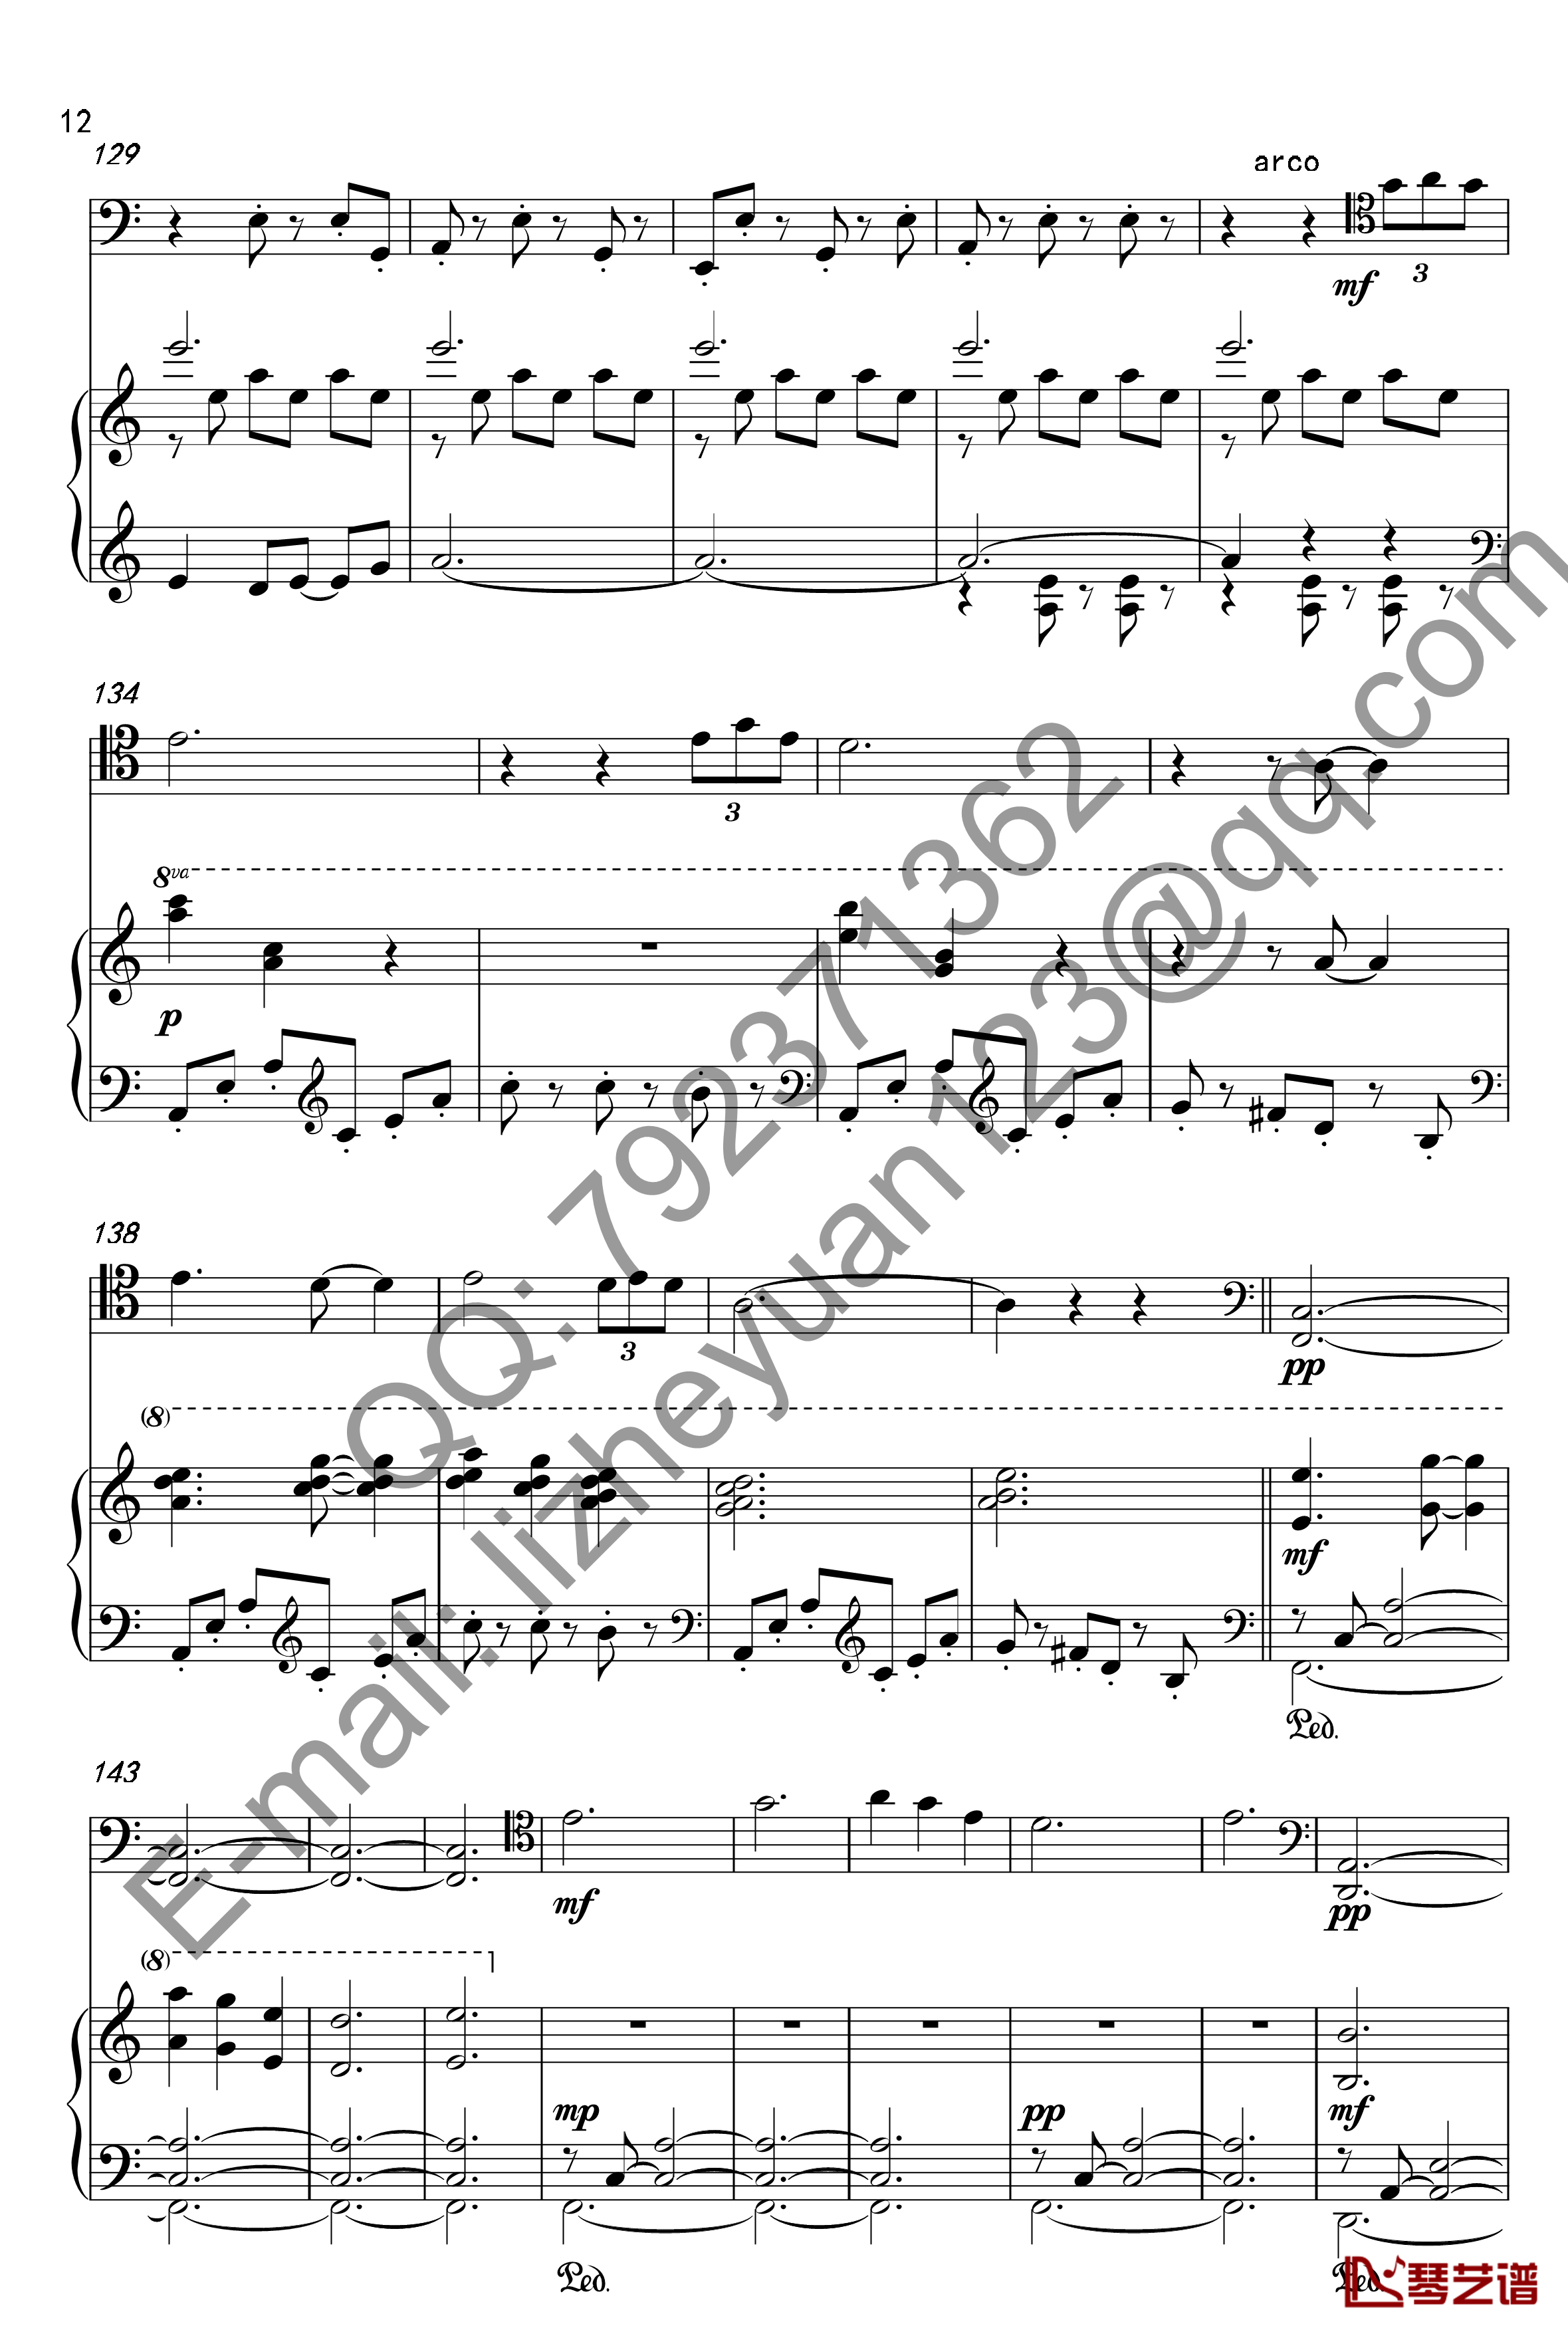 唐顿庄园主题曲钢琴谱-钢琴+大提琴-唐顿庄园12